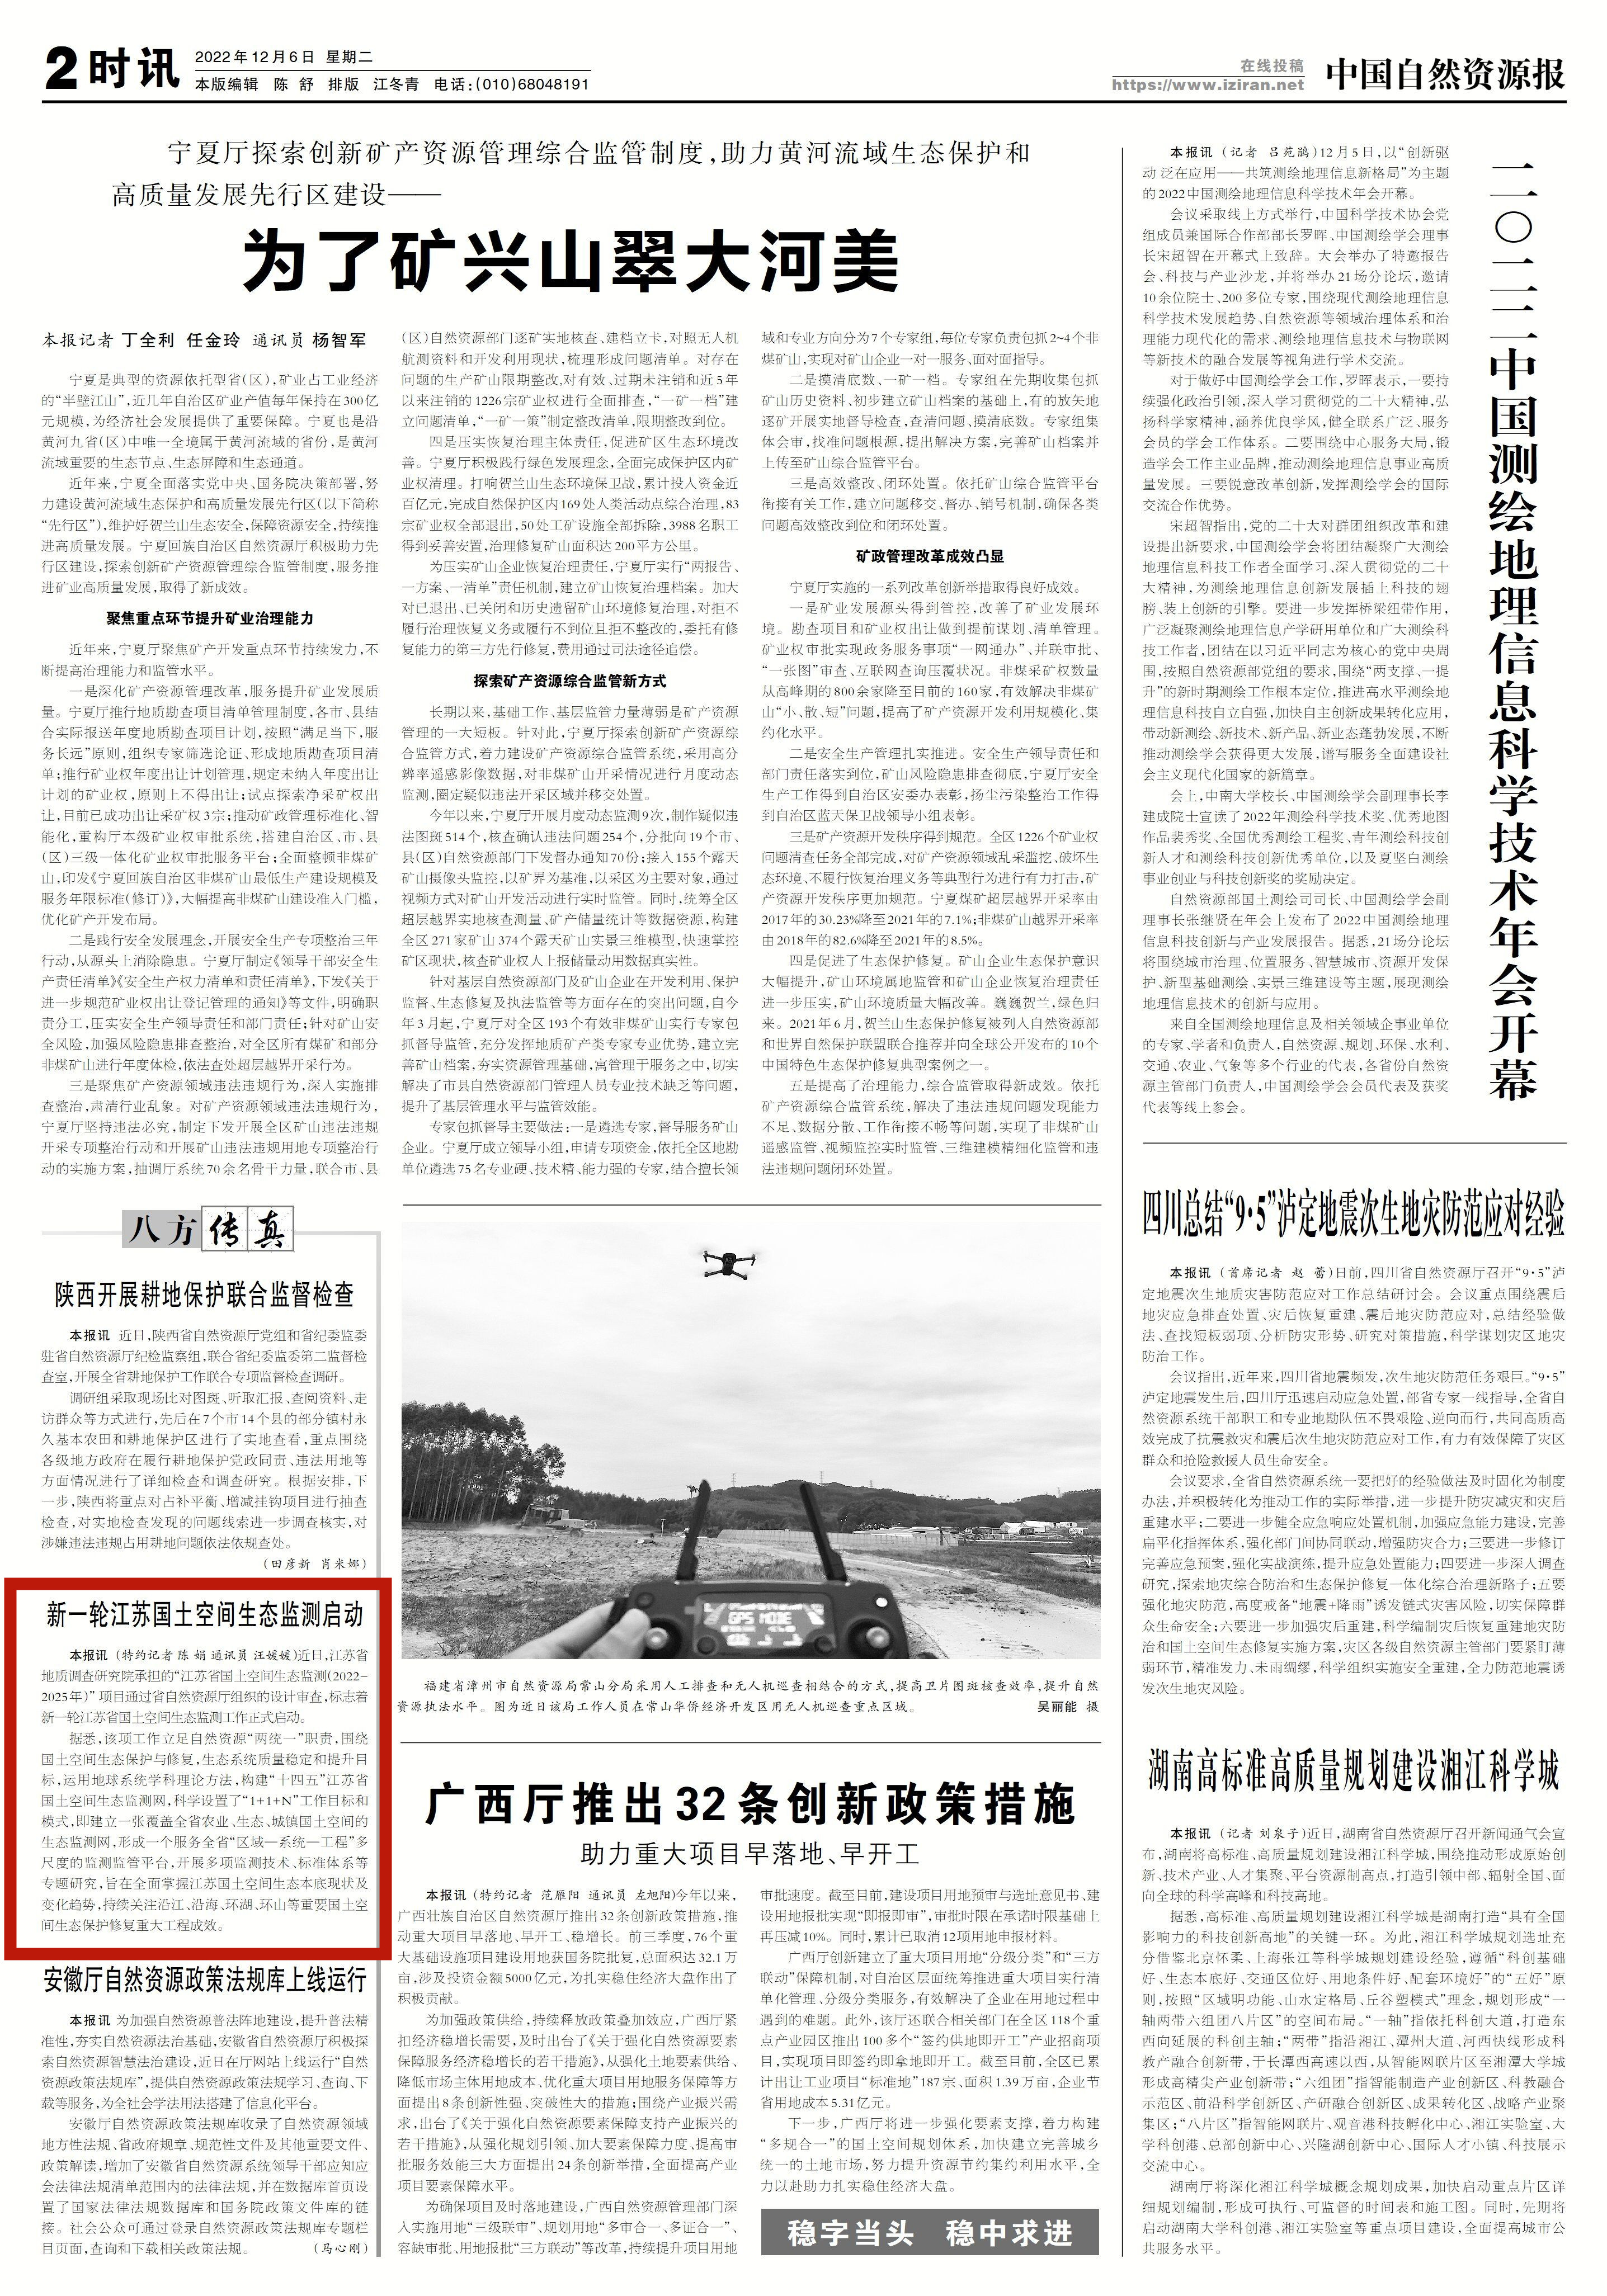 《中国自然资源报》2版报道江苏地调院（创新中心依托单位）开展新一